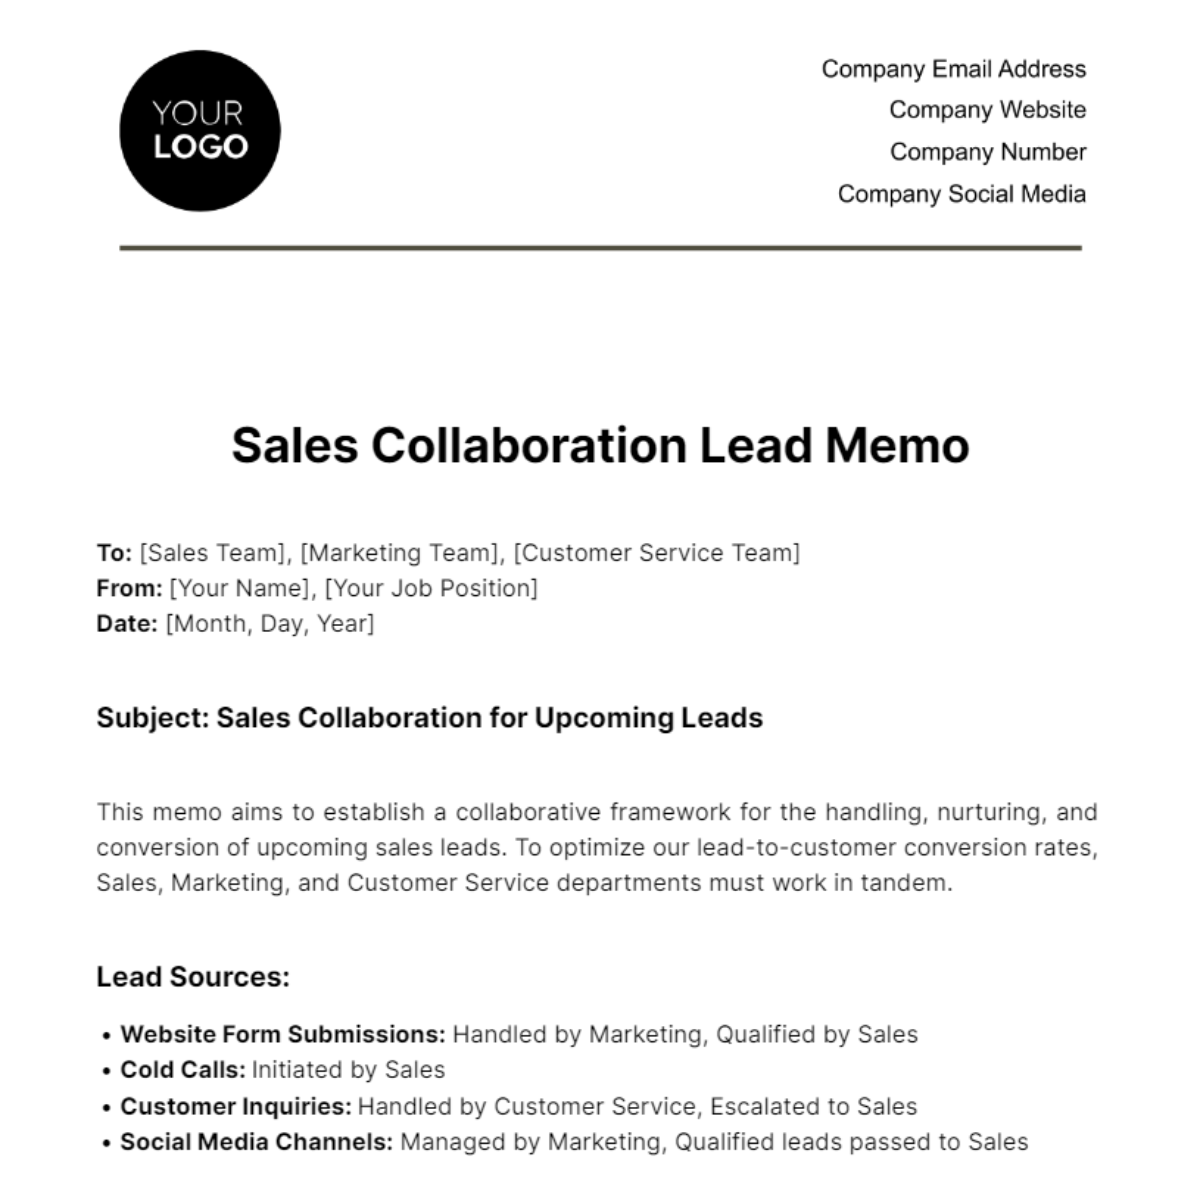 Sales Collaboration Lead Memo Template